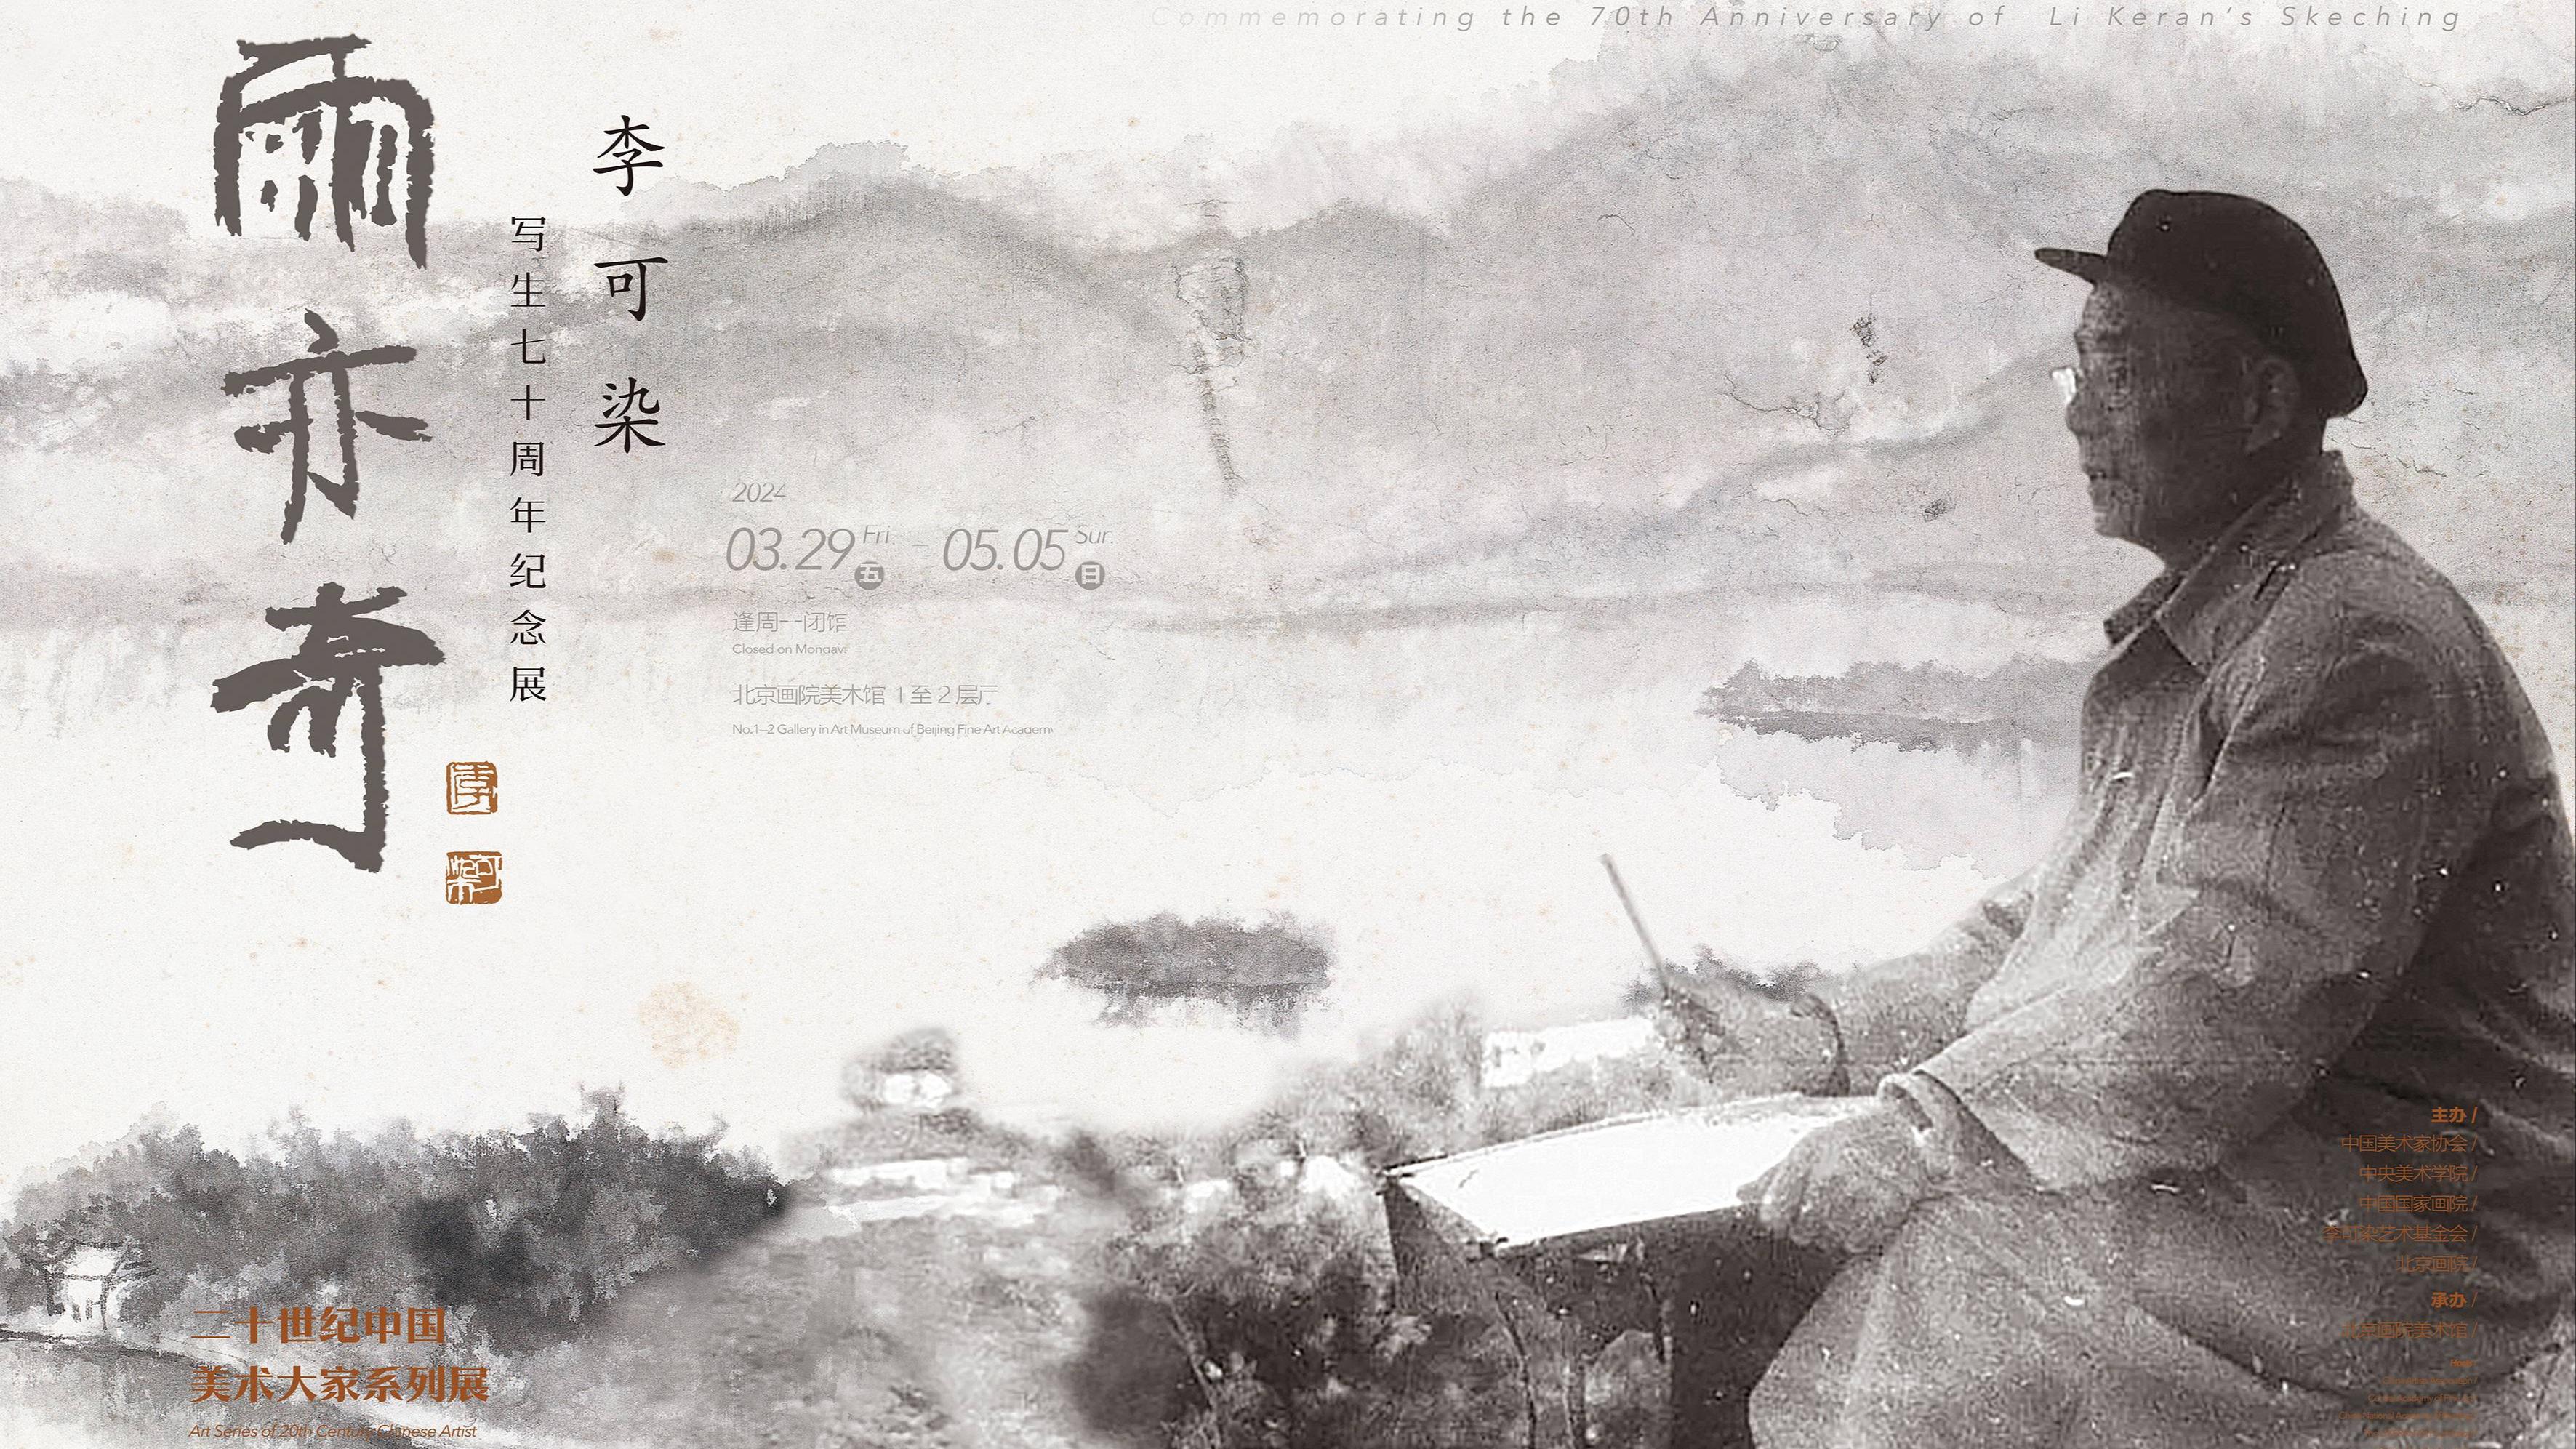 “李可染寫生七十週年紀念展”在北京畫院美術館開幕